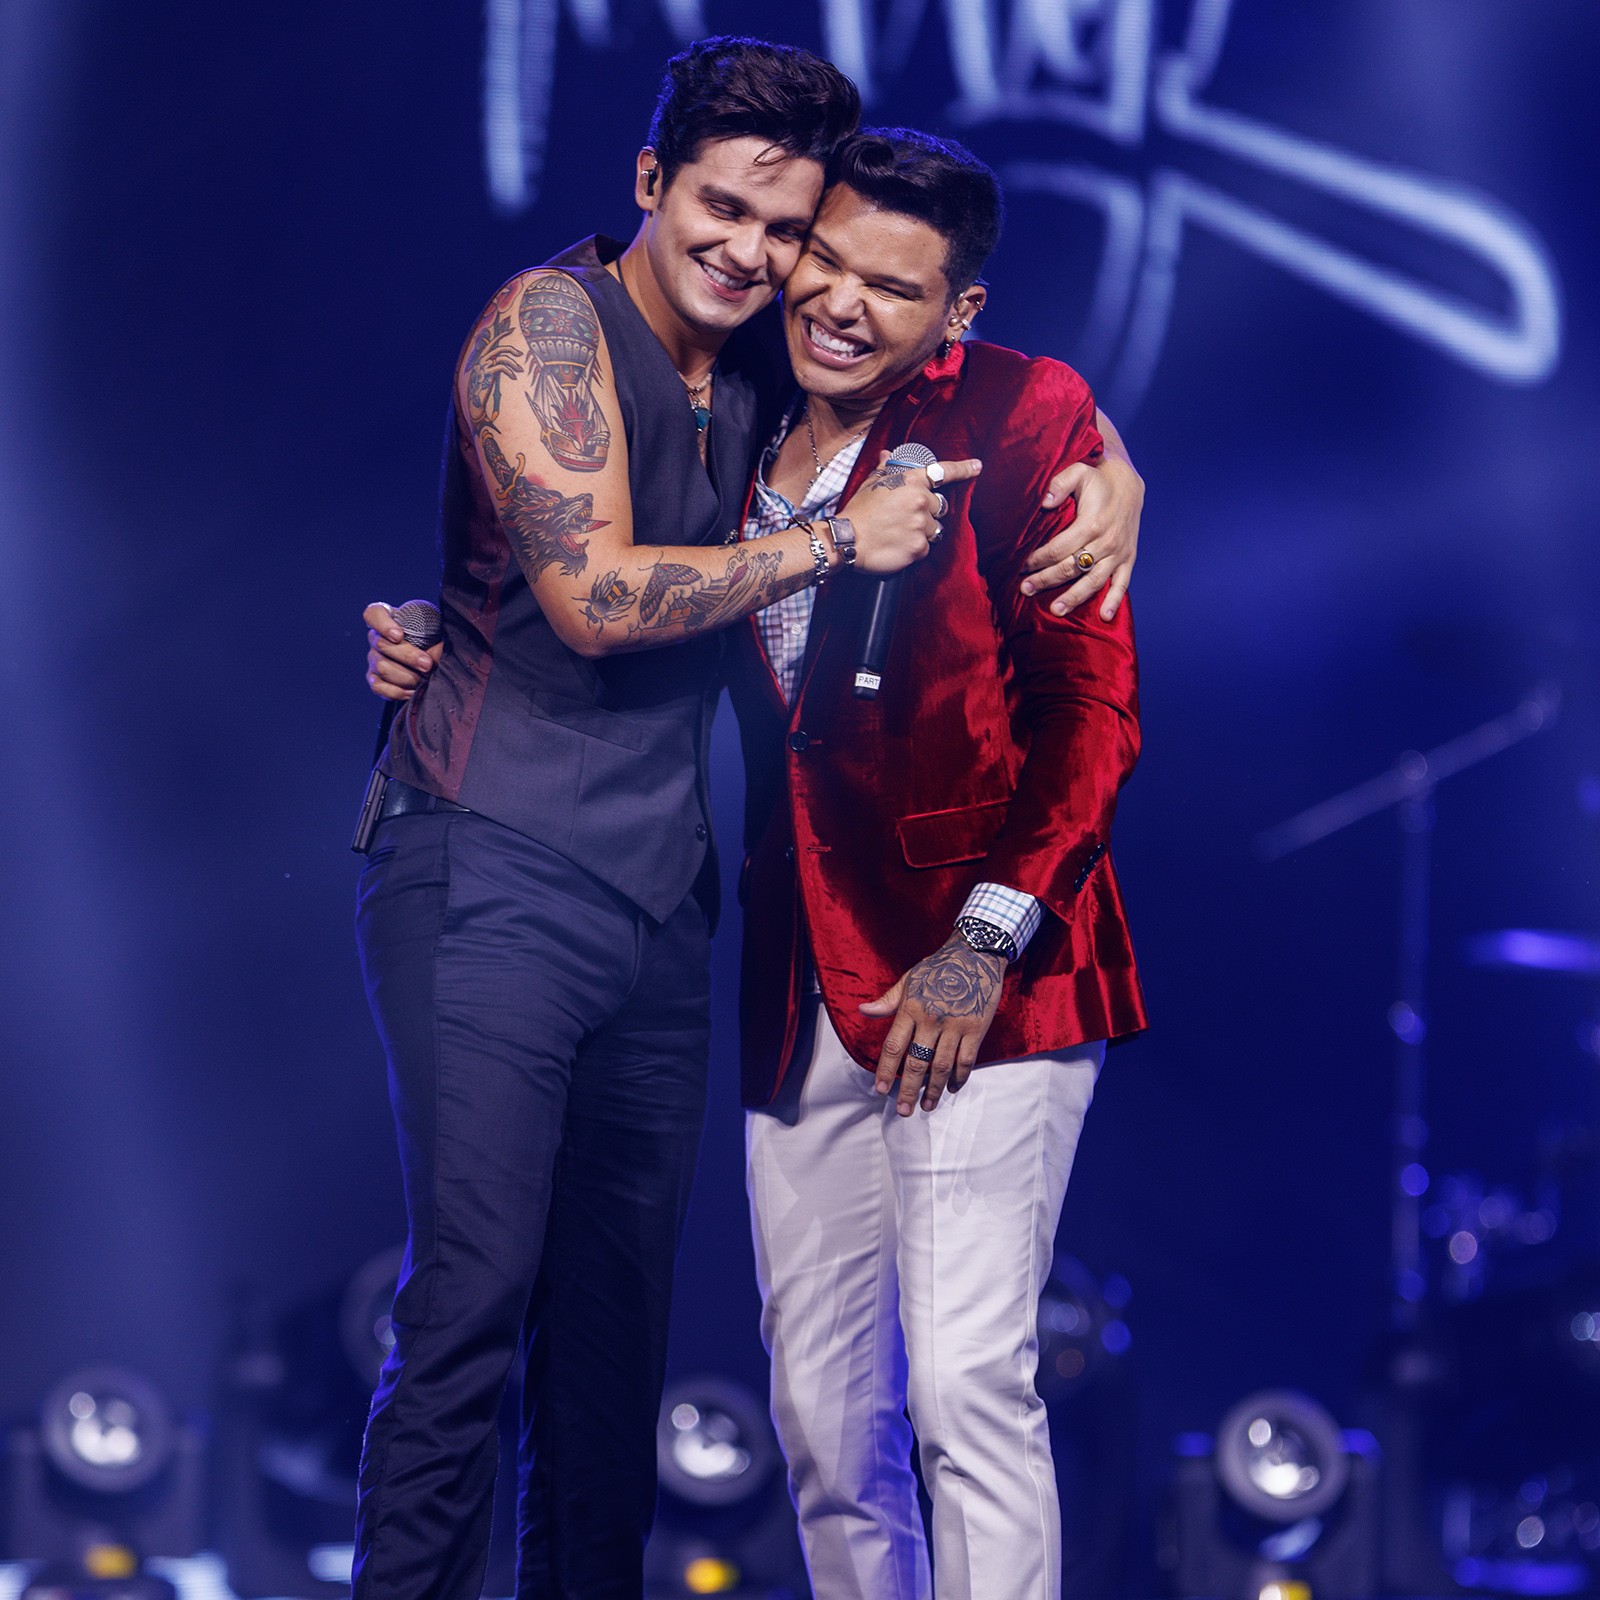 Tierry lança música gravada com Luan Santana há um ano em 'Rolê de milhões'